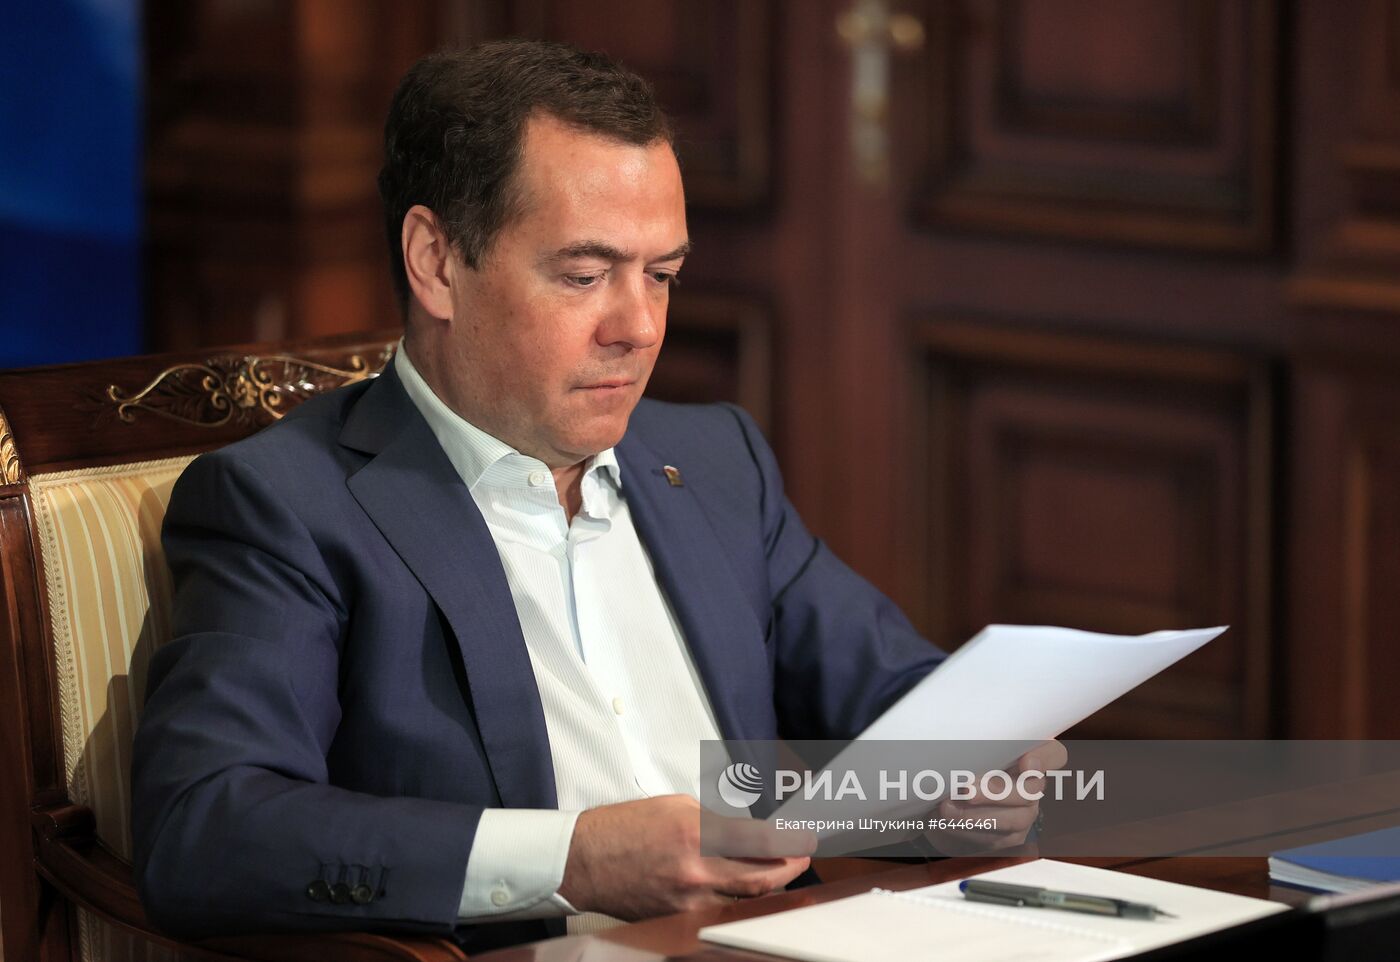 Зампреда Совбеза РФ, председатель "Единой России" Д. Медведев выступил на социальном онлайн-форуме ЕР